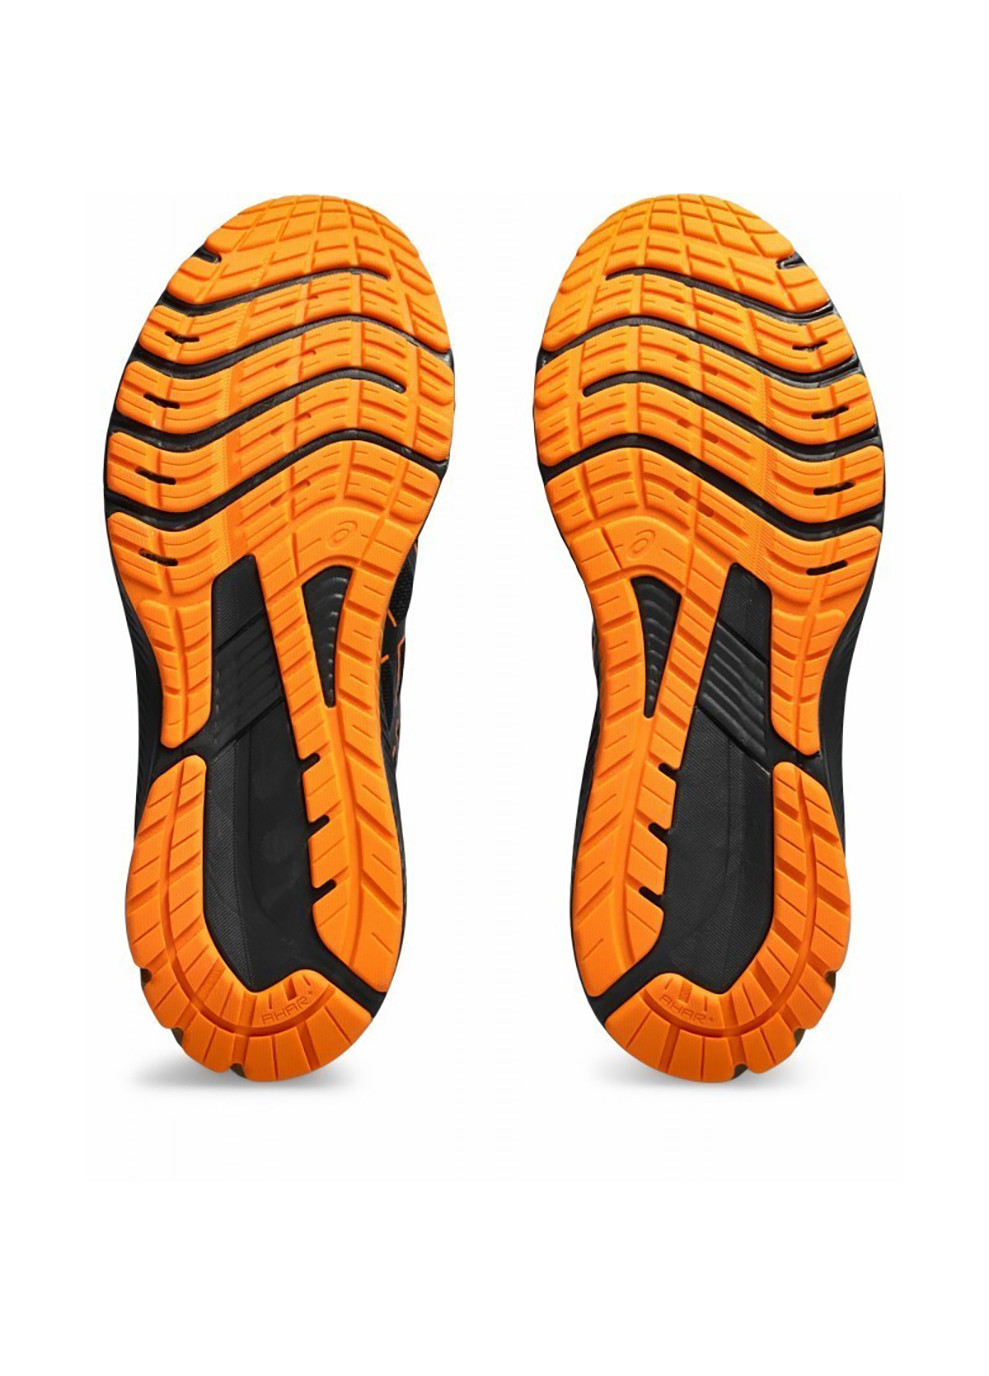 Цветные демисезонные мужские кроссовки gt-1000 12 gtx черный, оранжевый Asics